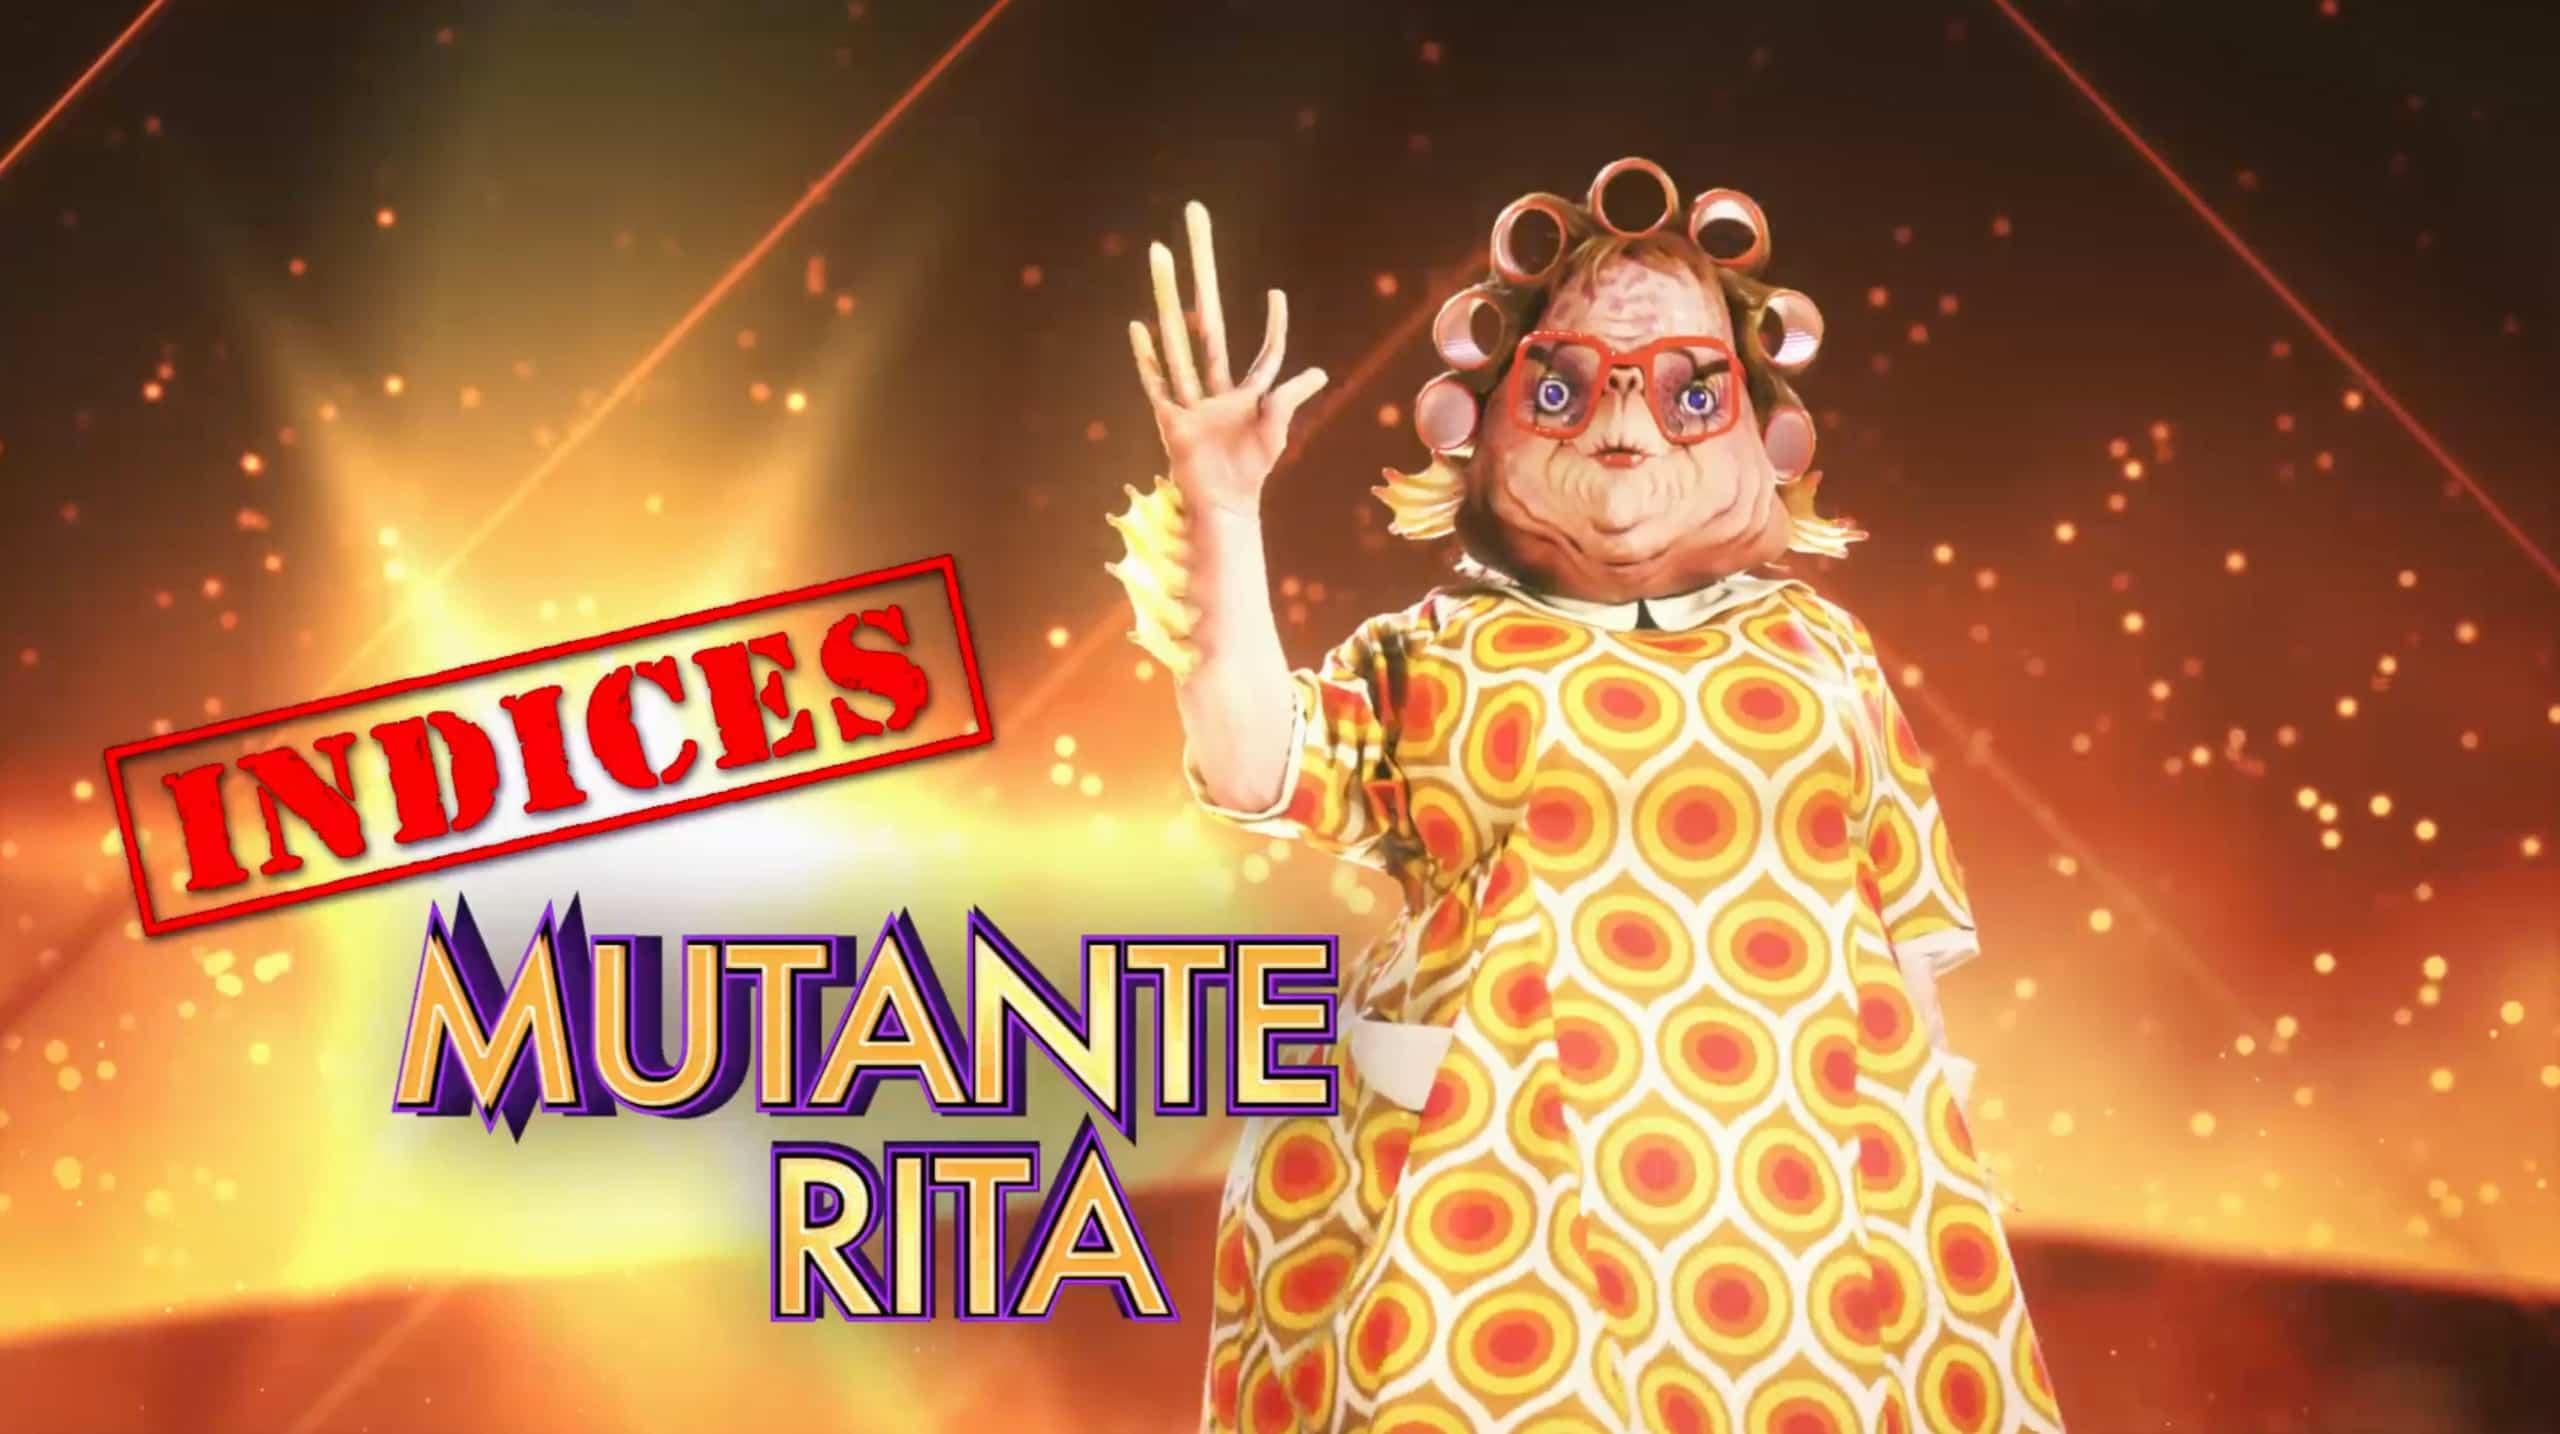 Mutante Rita - Indices 5